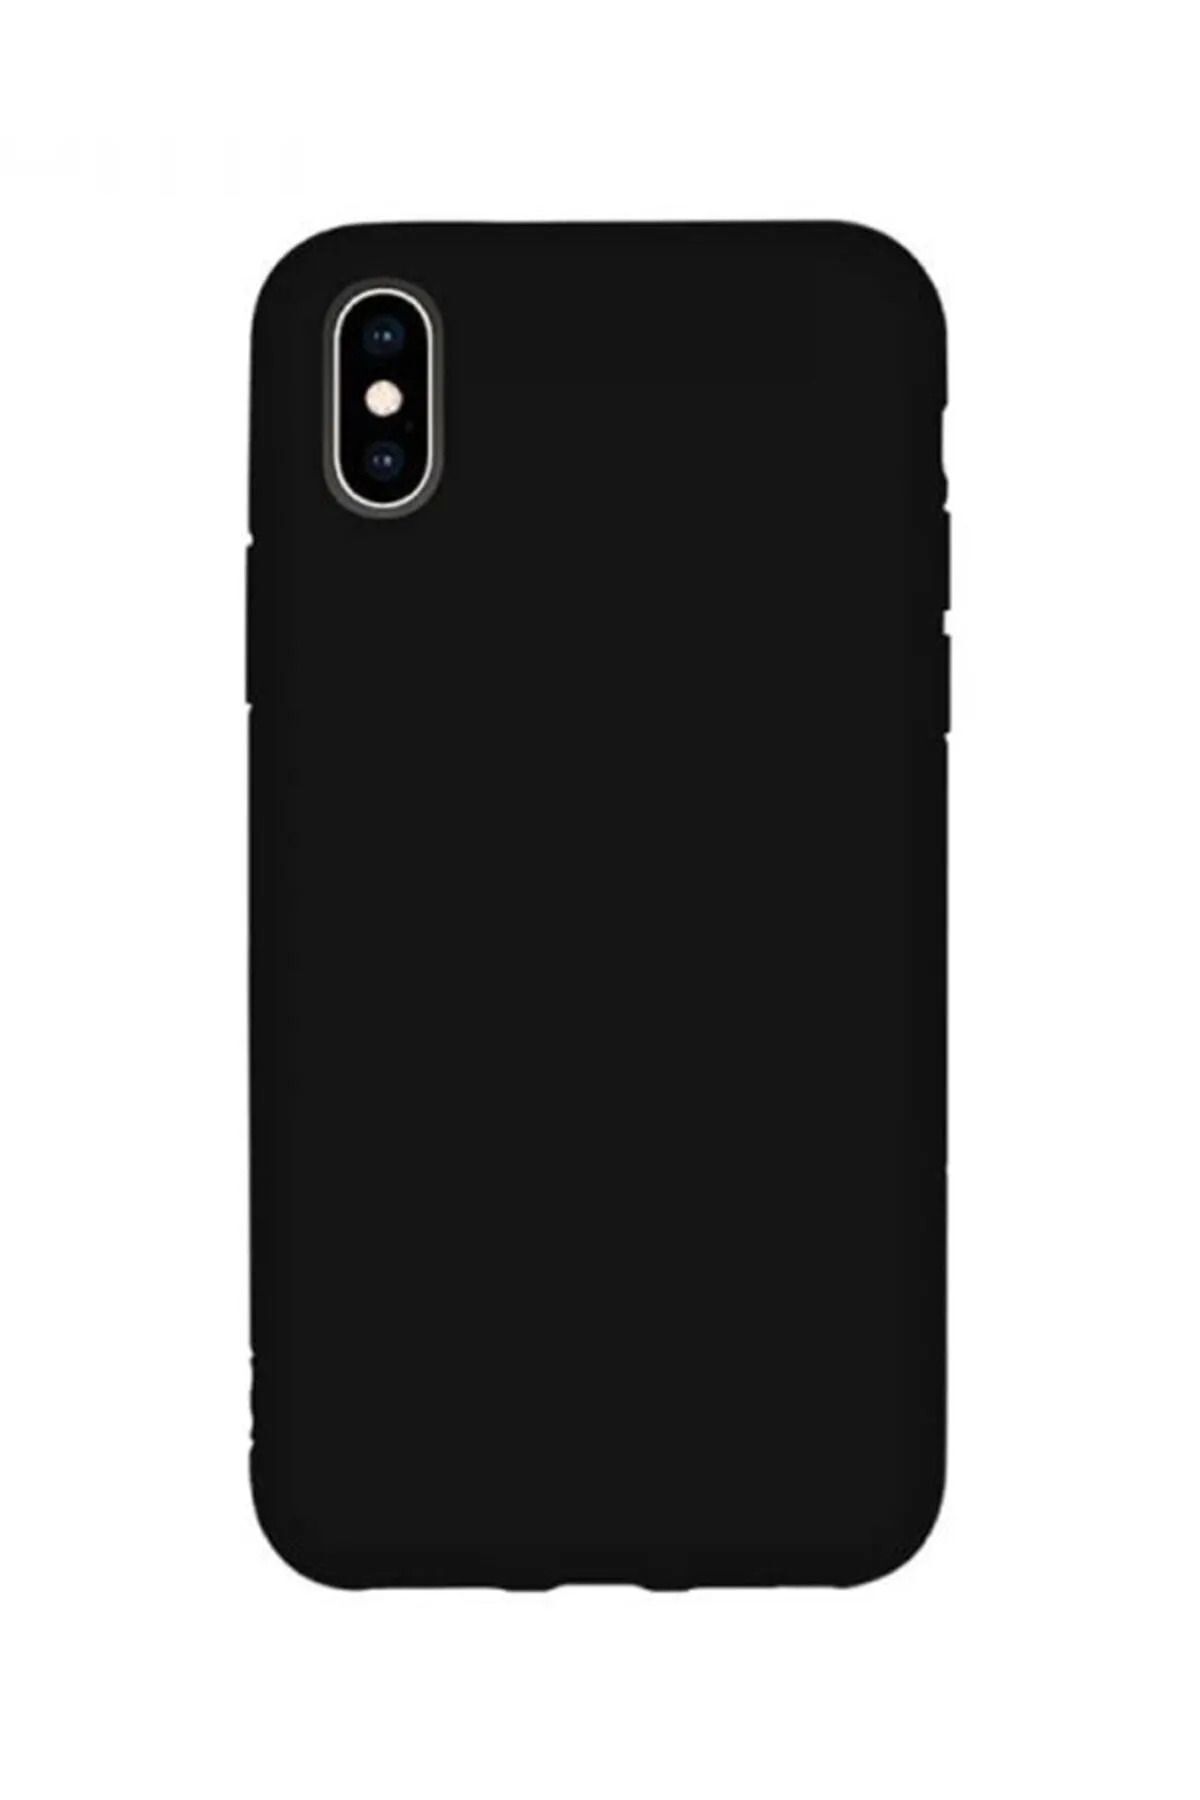 KVK PRİVACY Iphone X/xs Uyumlu Içi Kadife Lansman Silikon Kılıf Kapak Siyah